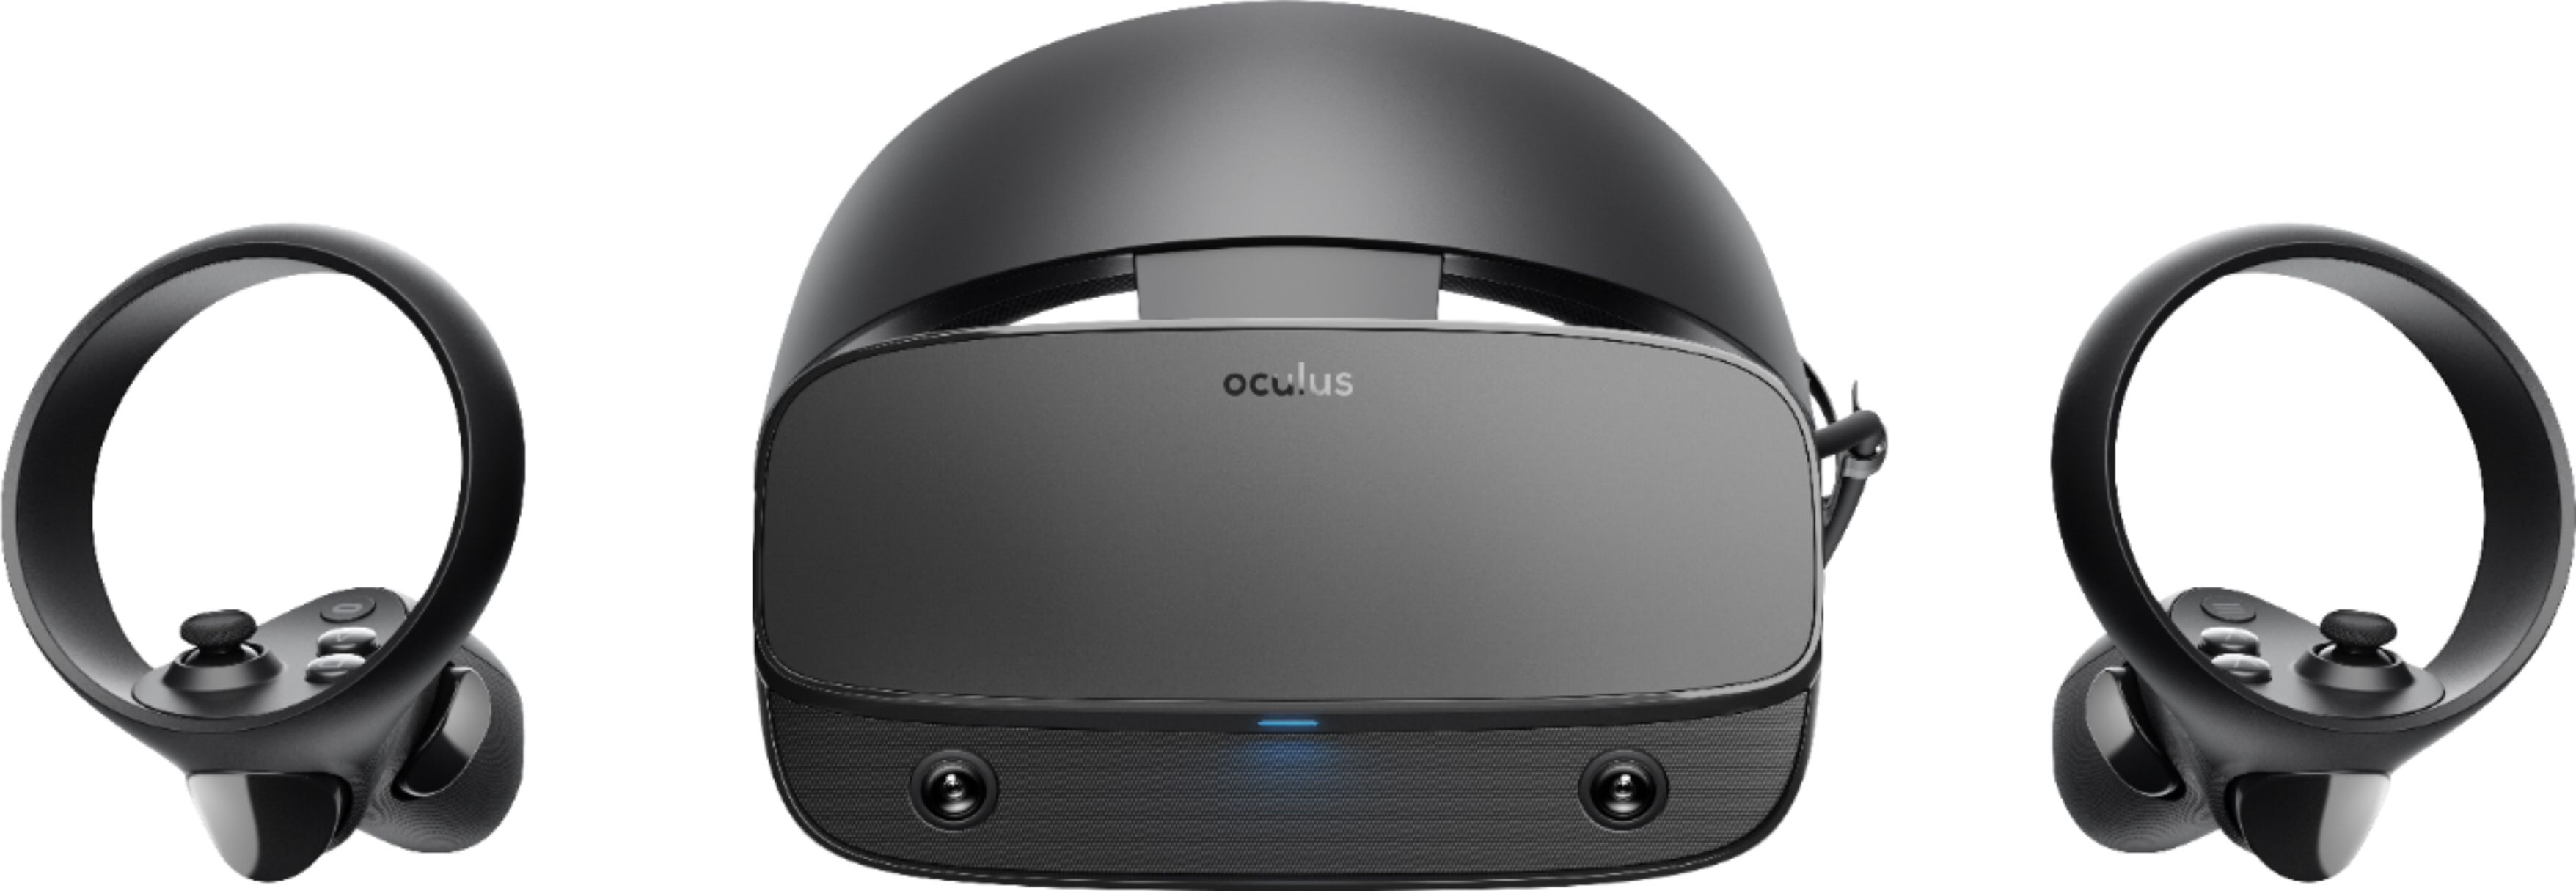 Best Buy: Oculus Rift S PC-Powered VR Gaming Headset Black 301-00178-01